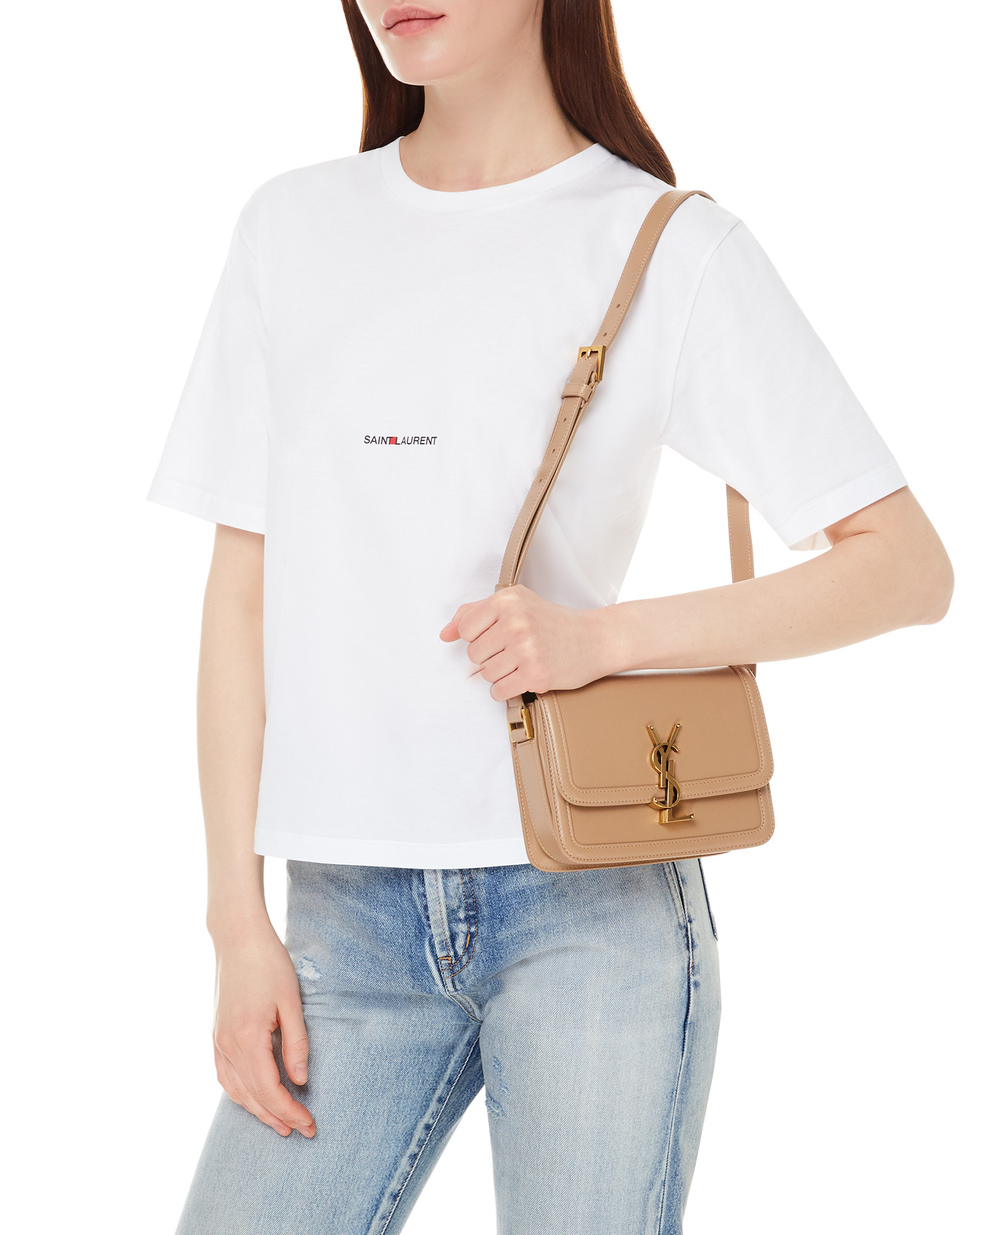 Кожаная сумка Solferino Small Saint Laurent 634306-0SX0W, бежевый цвет • Купить в интернет-магазине Kameron